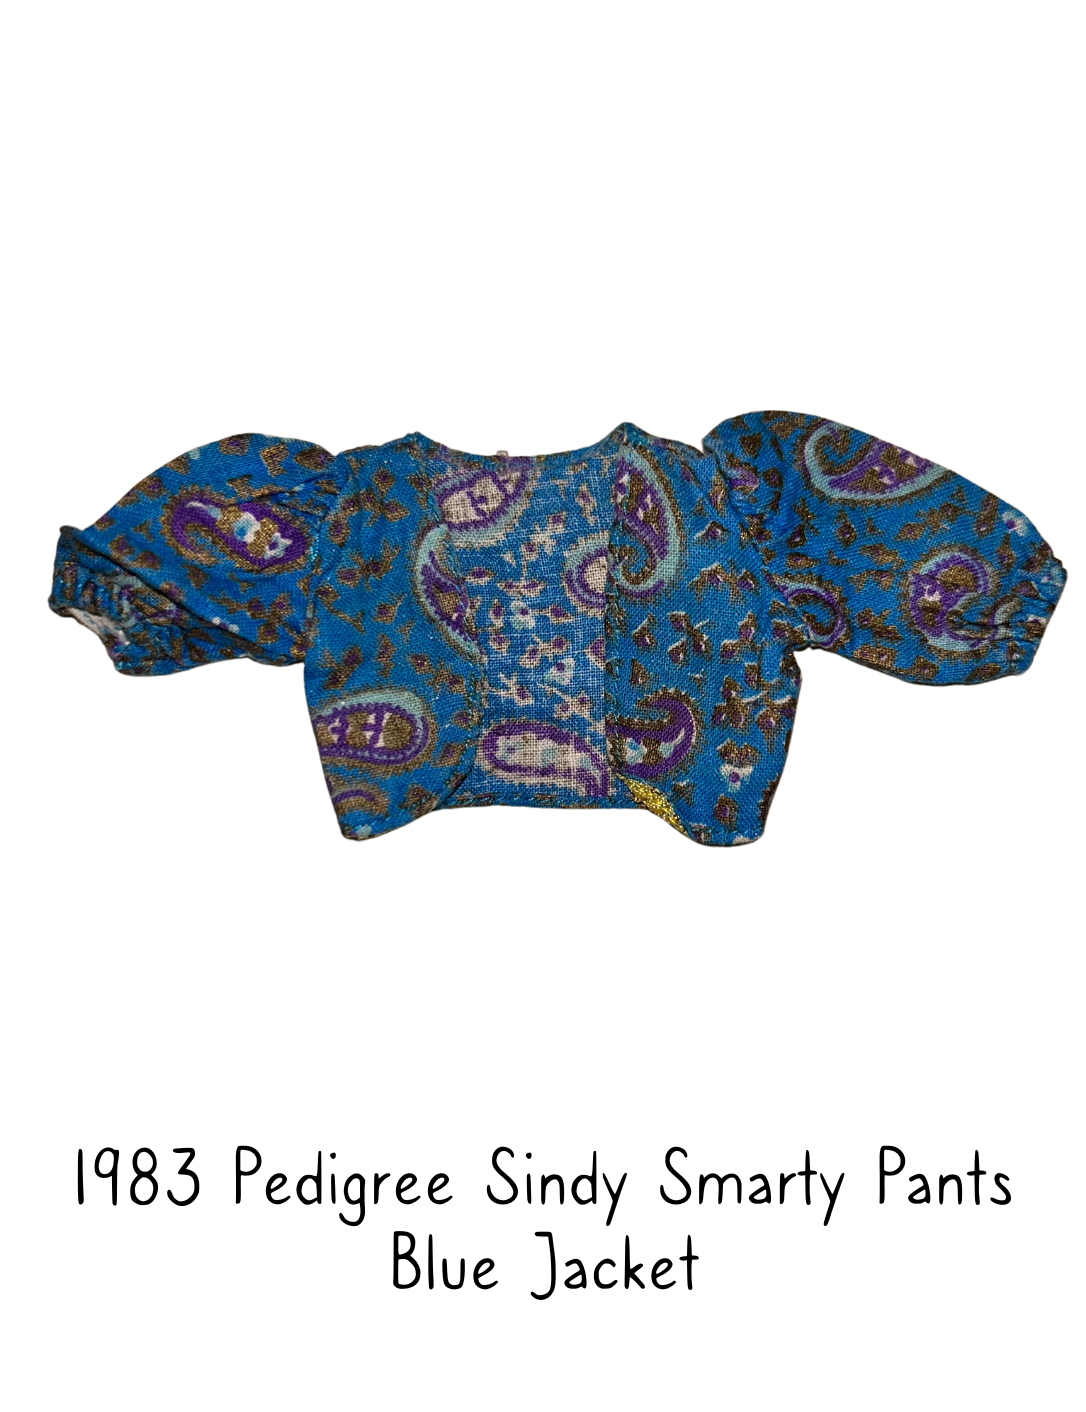 1983 Pedigree Sindy Fashion Doll Smarty Pants Blue Jacket